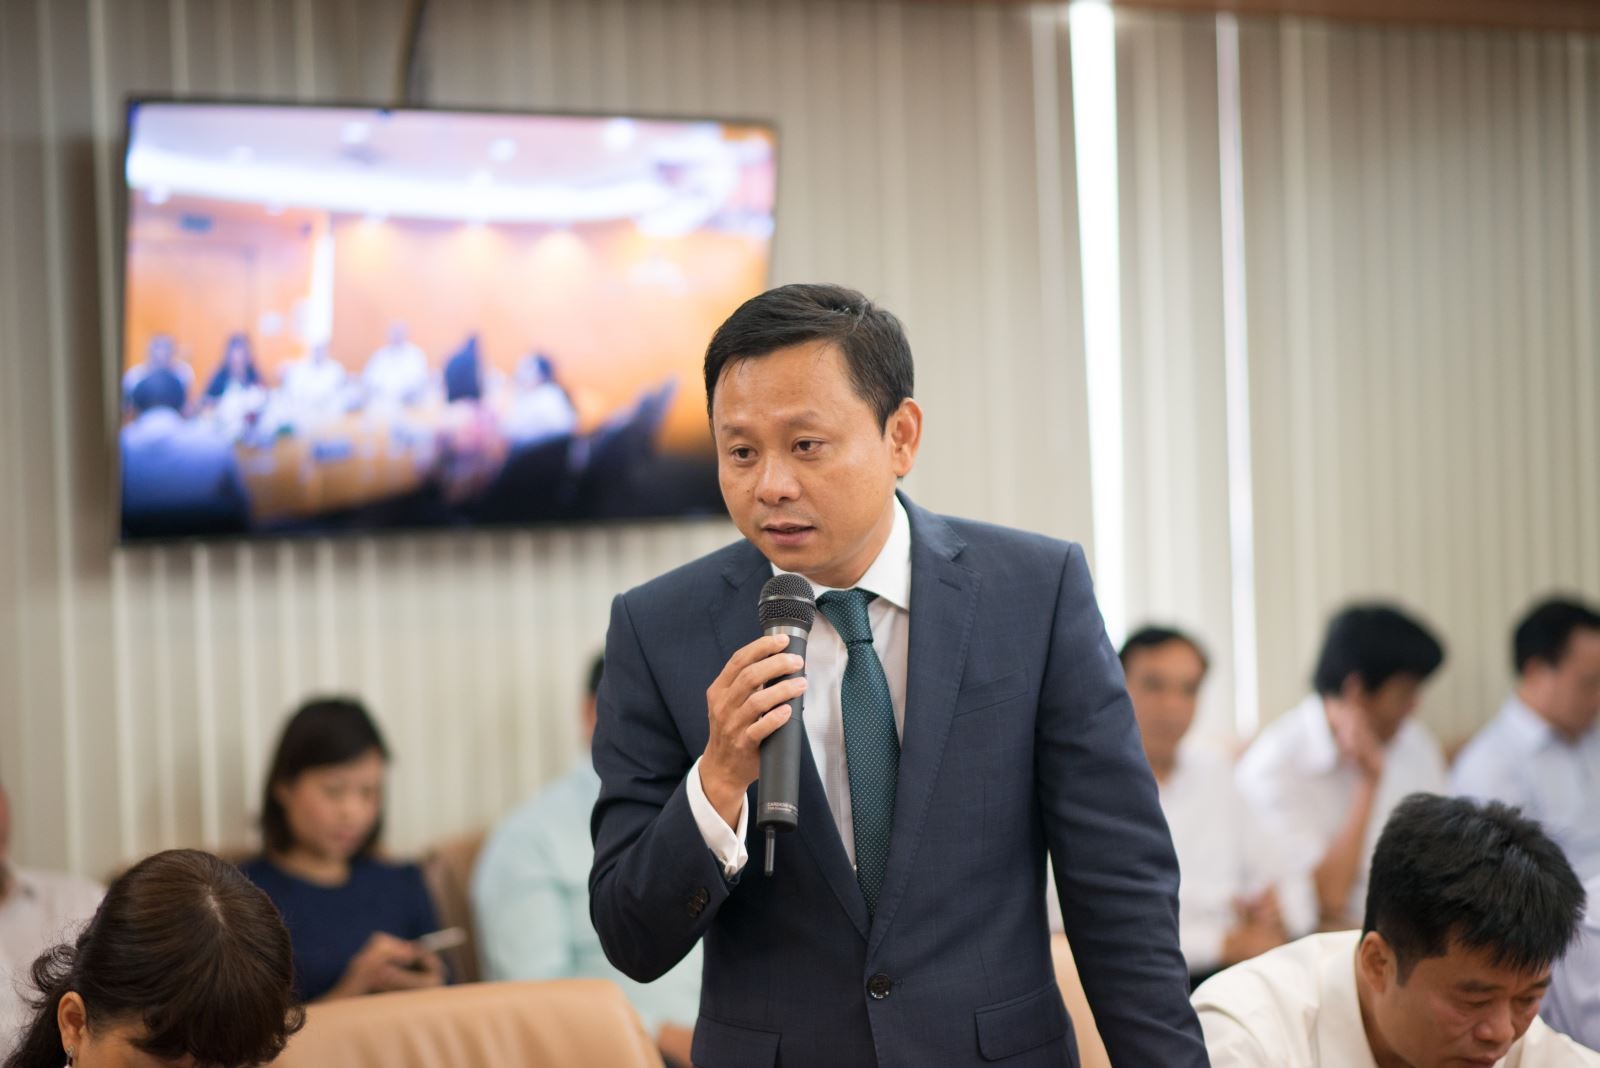 
Trước khi về làm lãnh đạo tại Vinataba, ông Hồ Lê Nghĩa từng công tác tại Viện Nghiên cứu chiến lược, chính sách công nghiệp của Bộ Công Thương kể từ năm 2003
